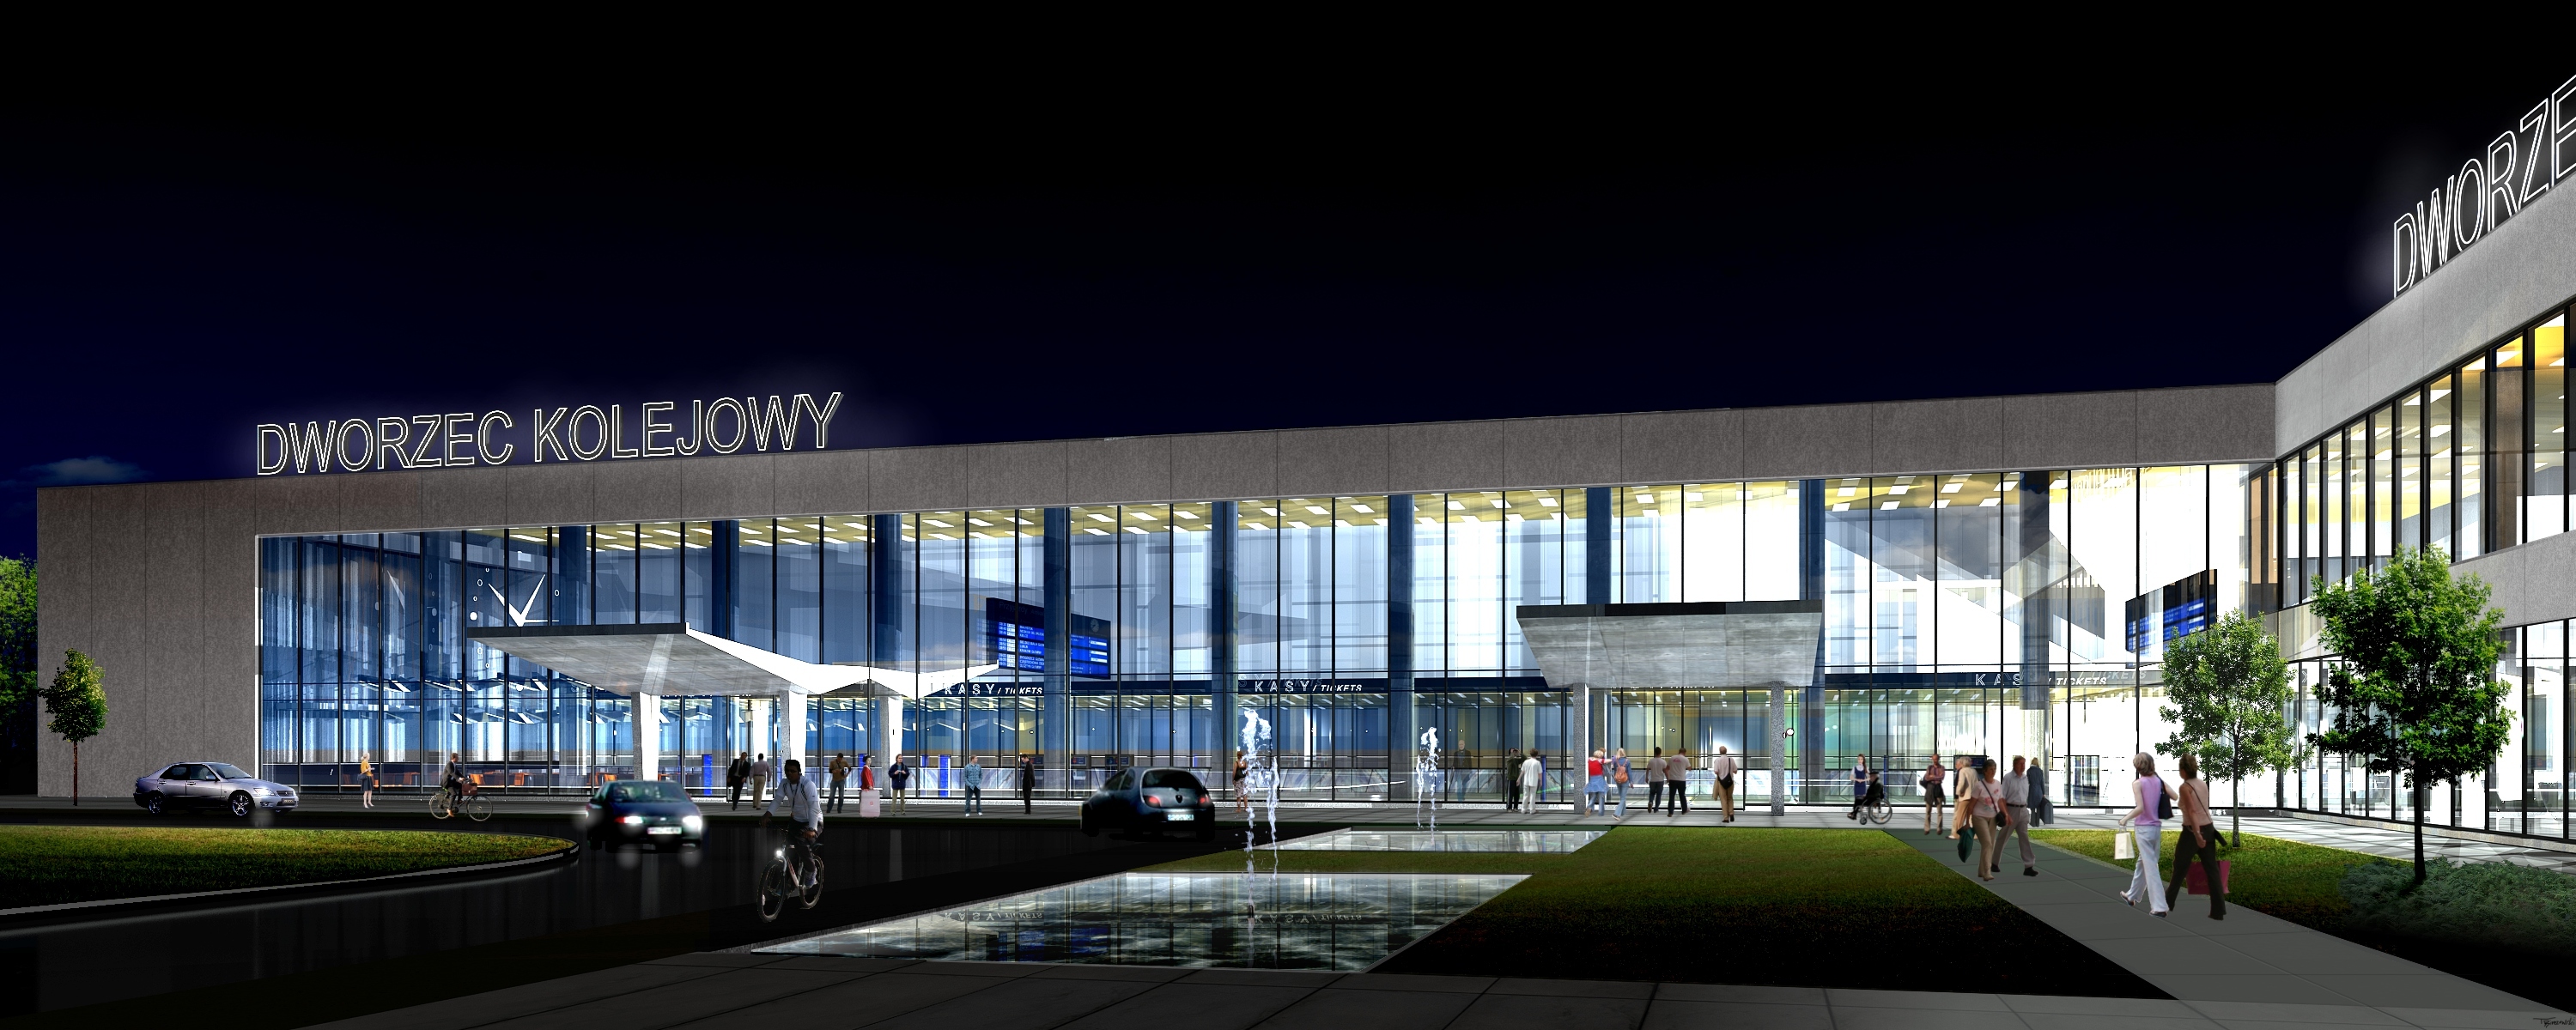 Dworzec Główny po remoncie nocą - wizualizacja Forum Rozwoju Olsztyna